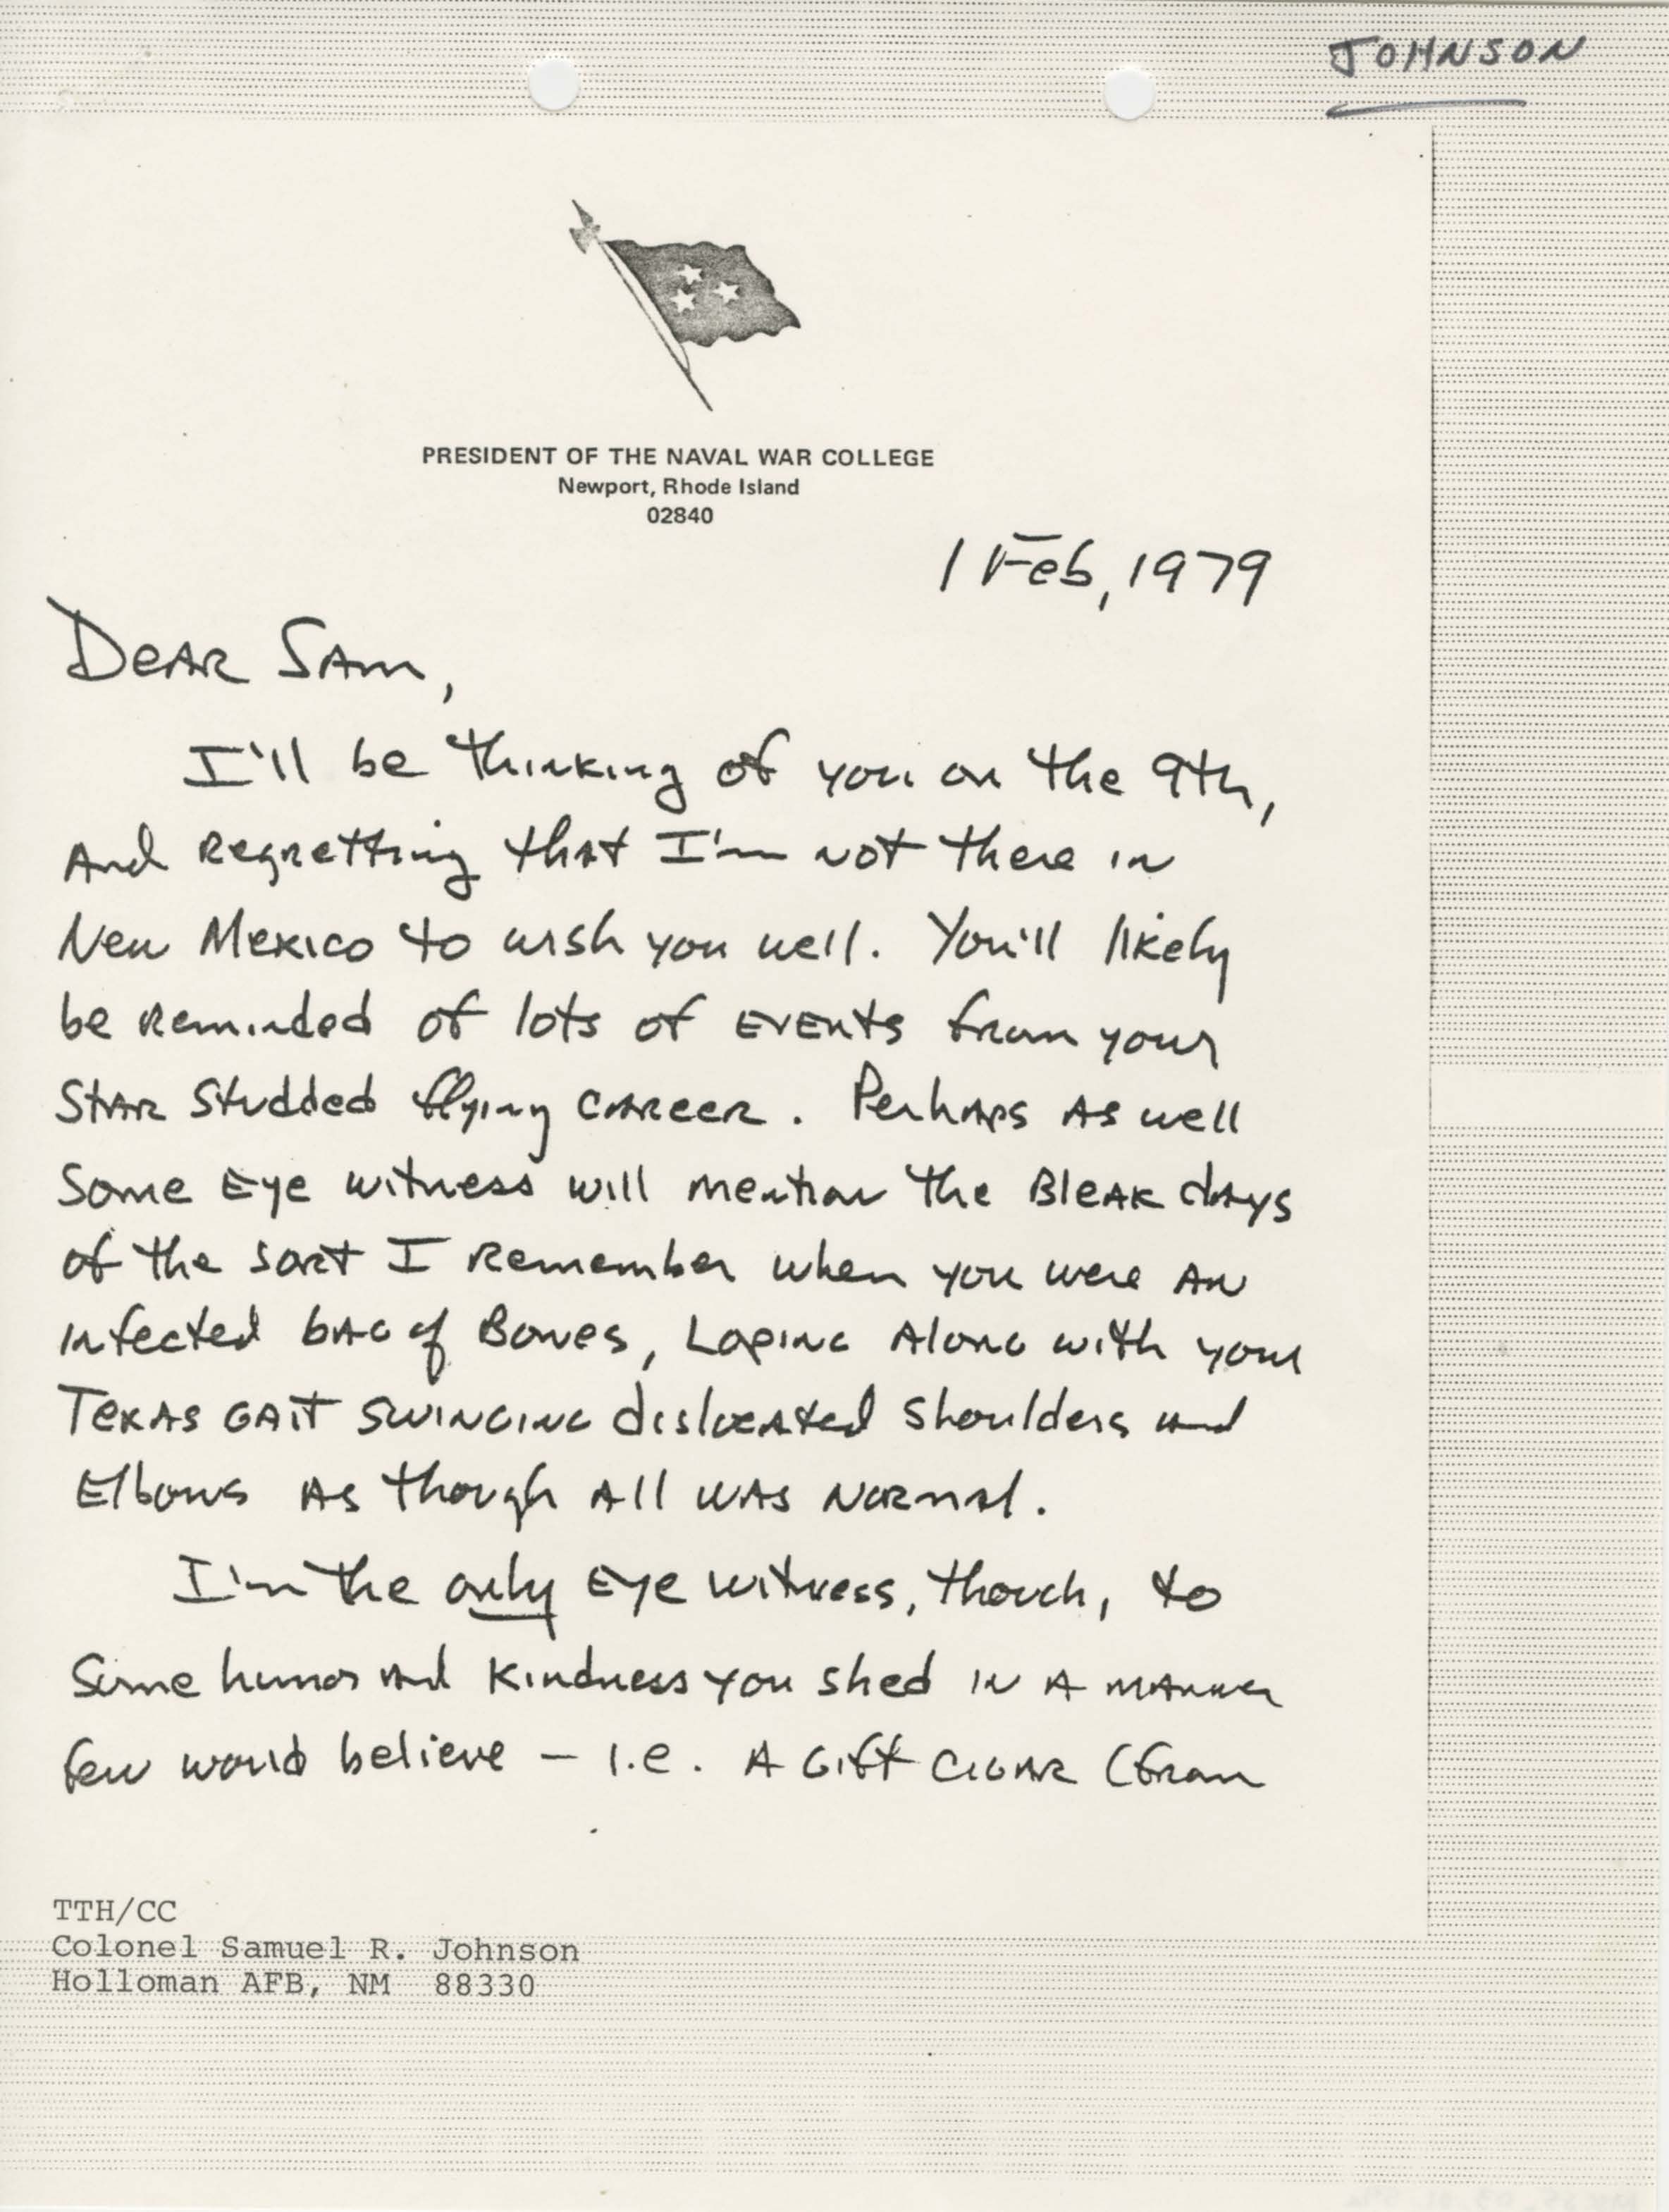 Letter from James B. Stockdale to Samuel R. Johnson